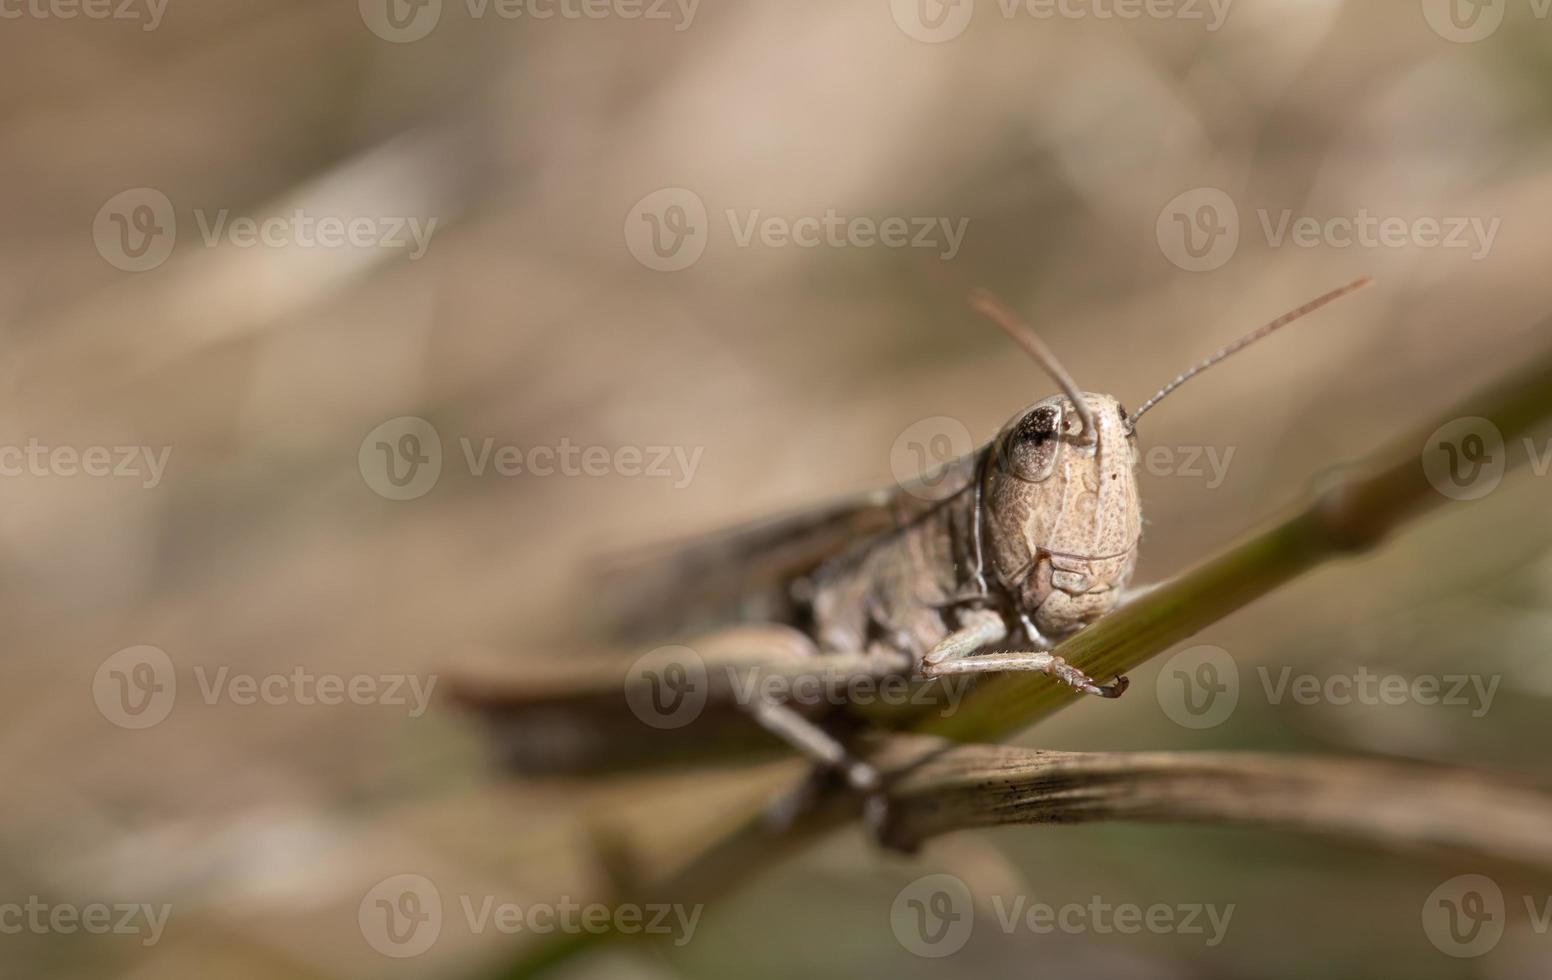 primer plano de un grillo marrón escondido entre ramas secas. se puede ver la cabeza y como el insecto se agarra al tallo foto